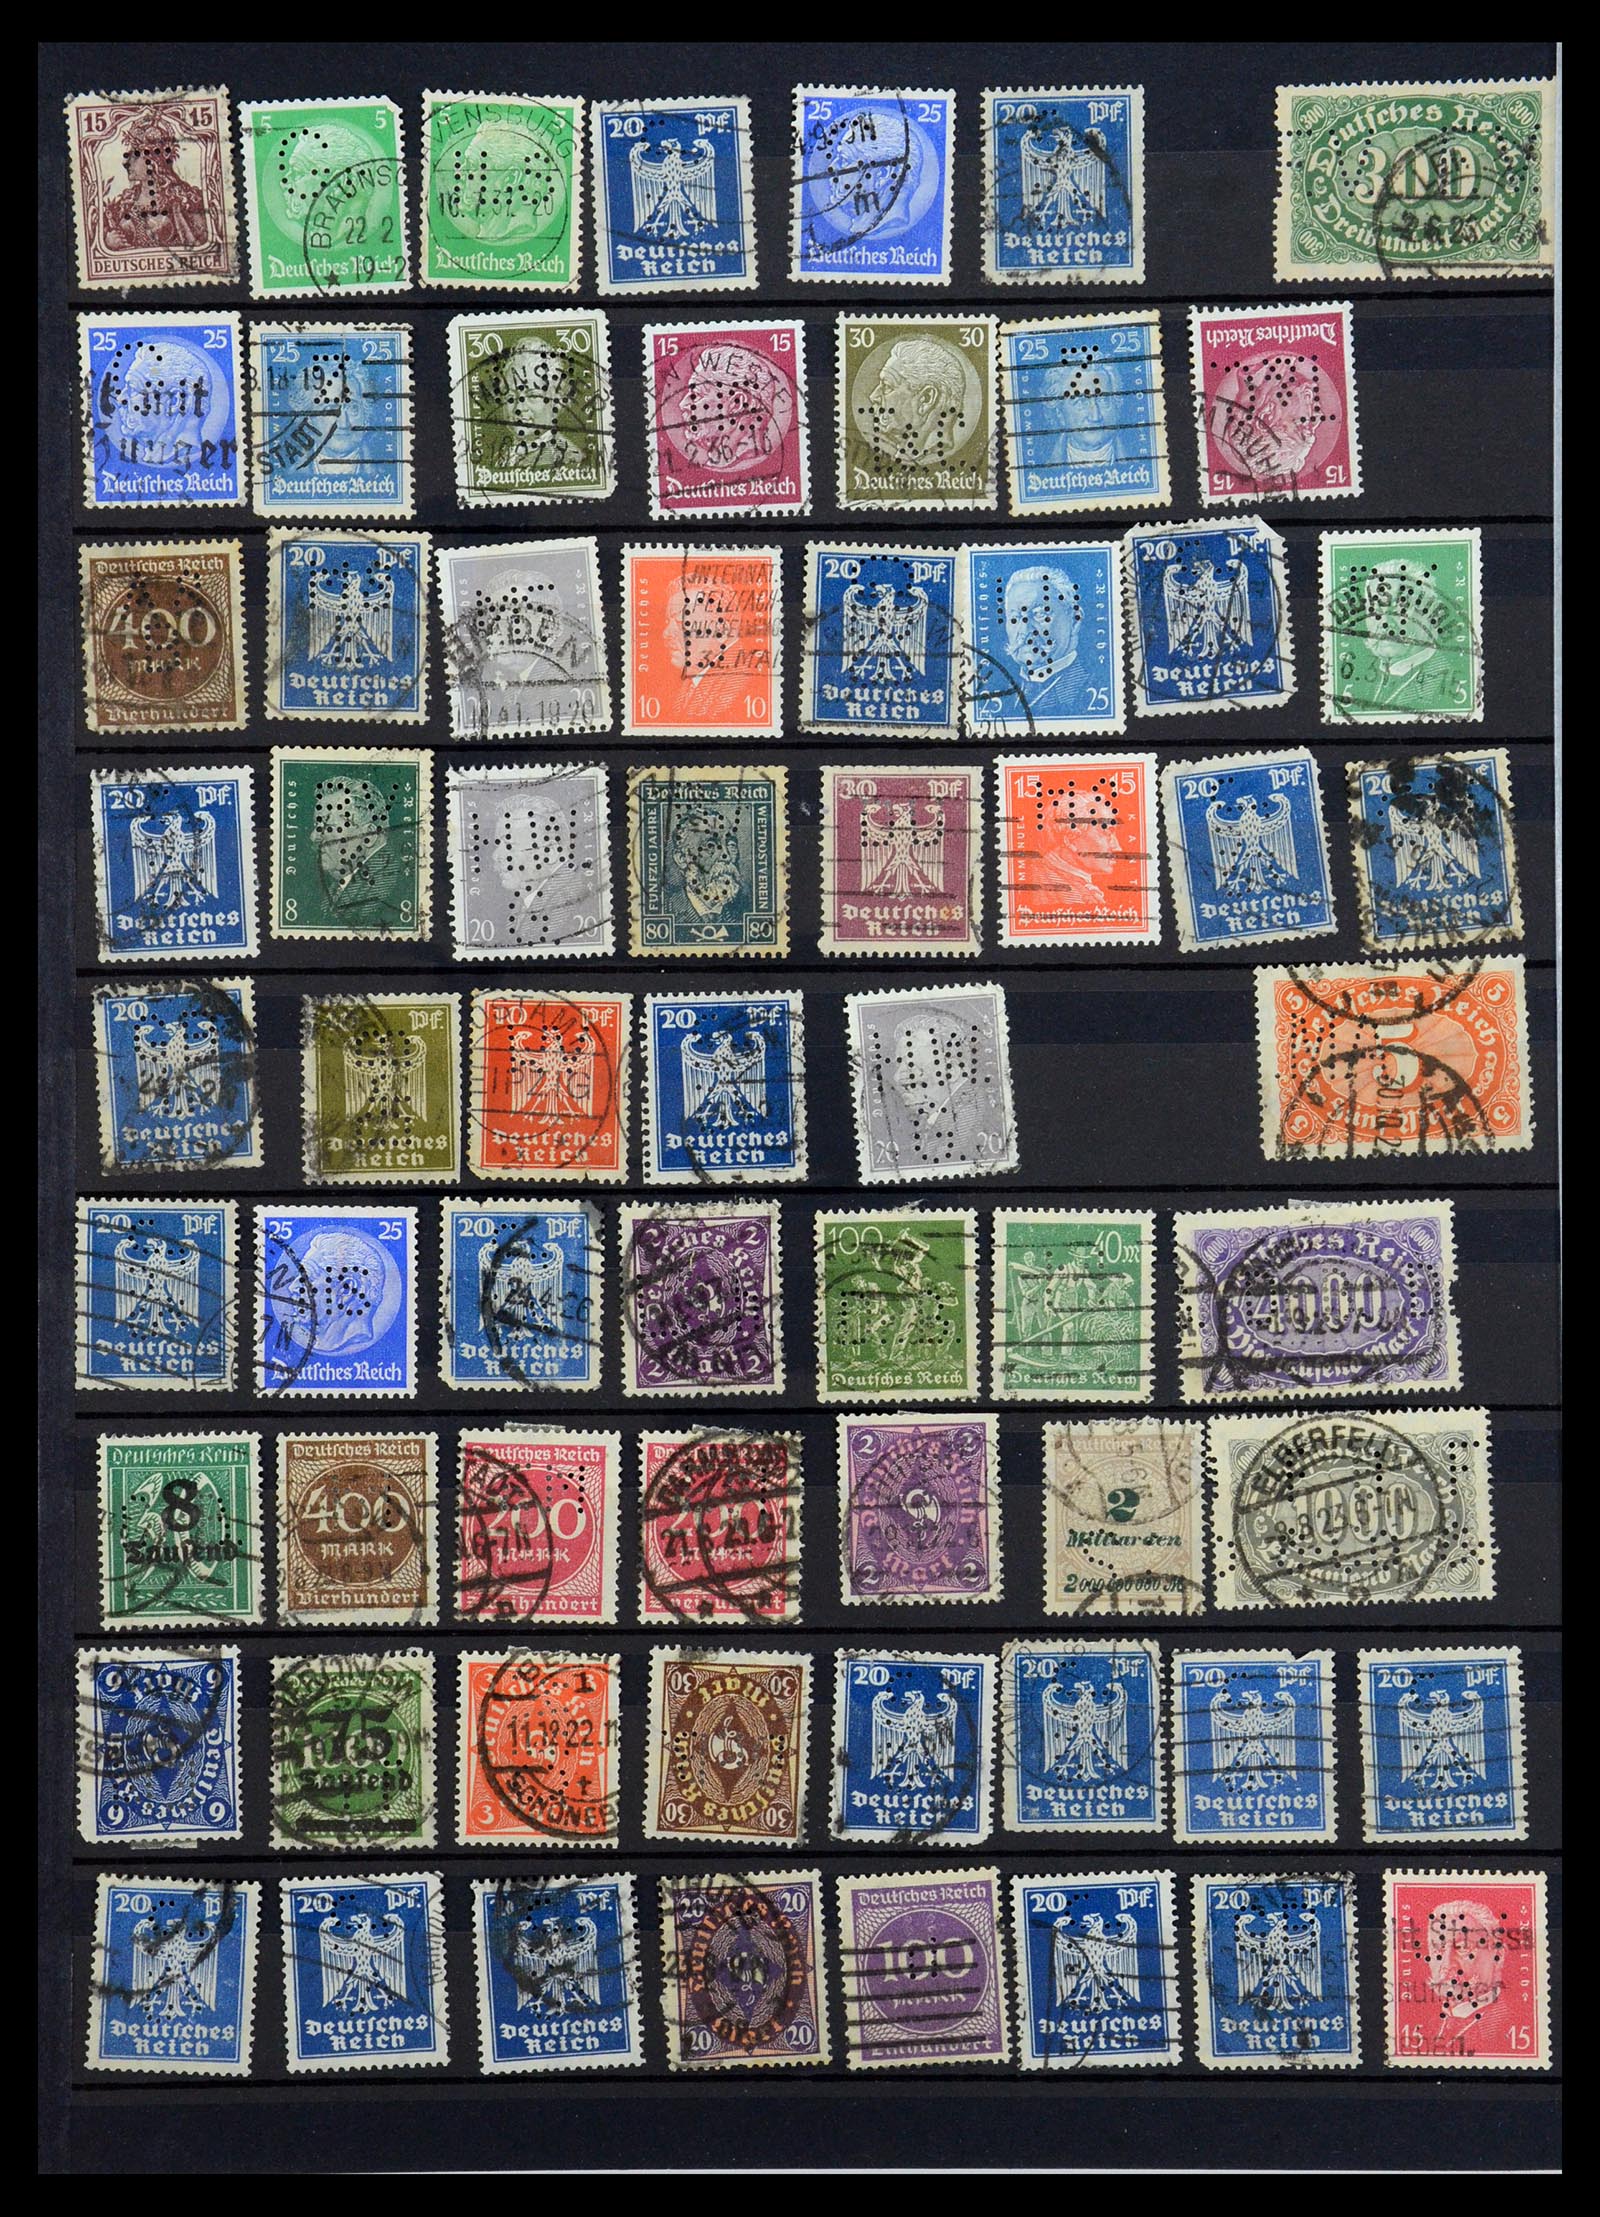 35183 042 - Stamp Collection 35183 German Reich perfins 1880-1945.